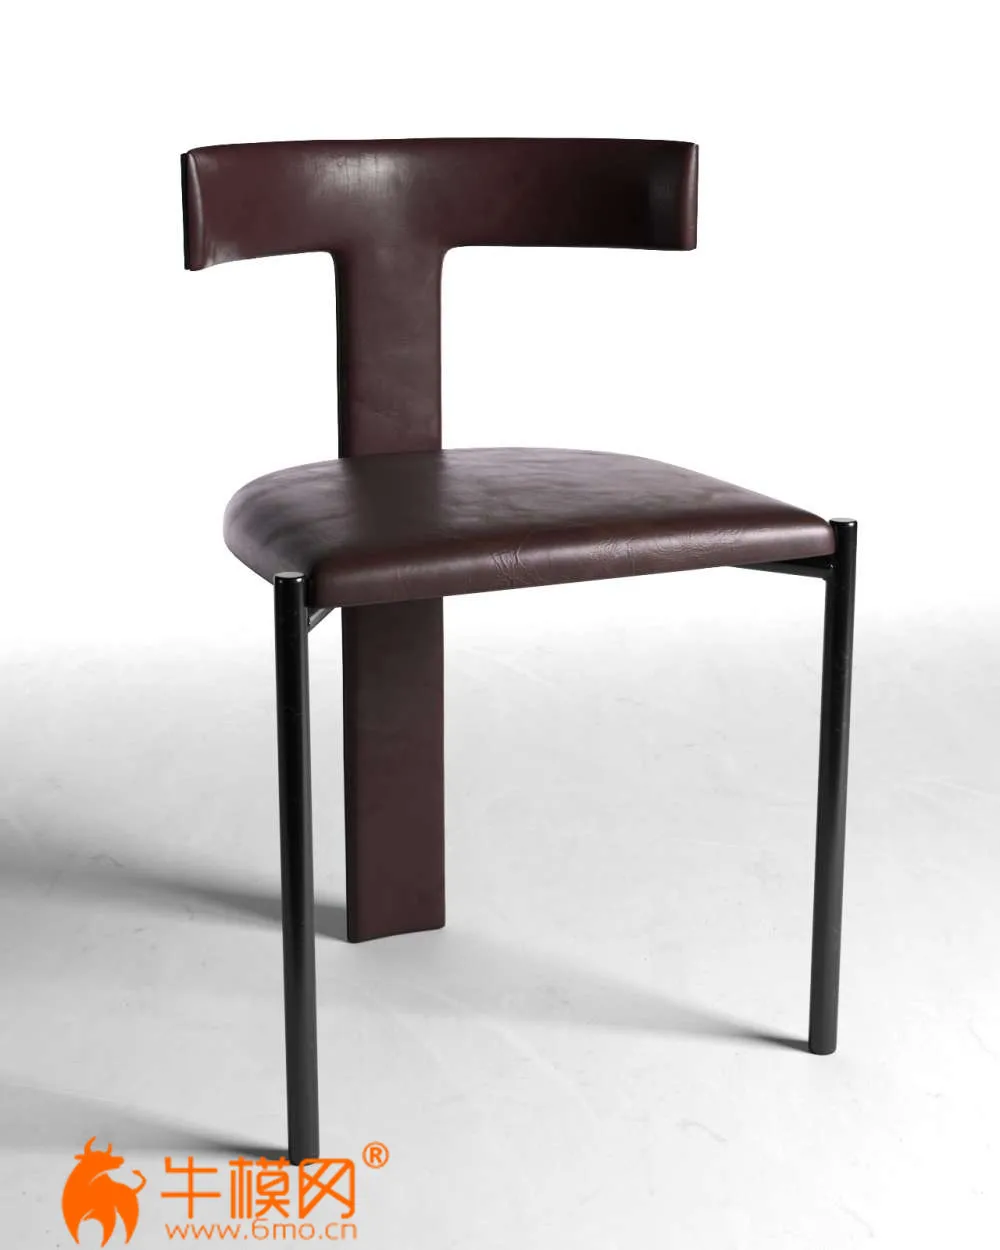 Zefir Chair (max, fbx, obj, c4d) – 4282